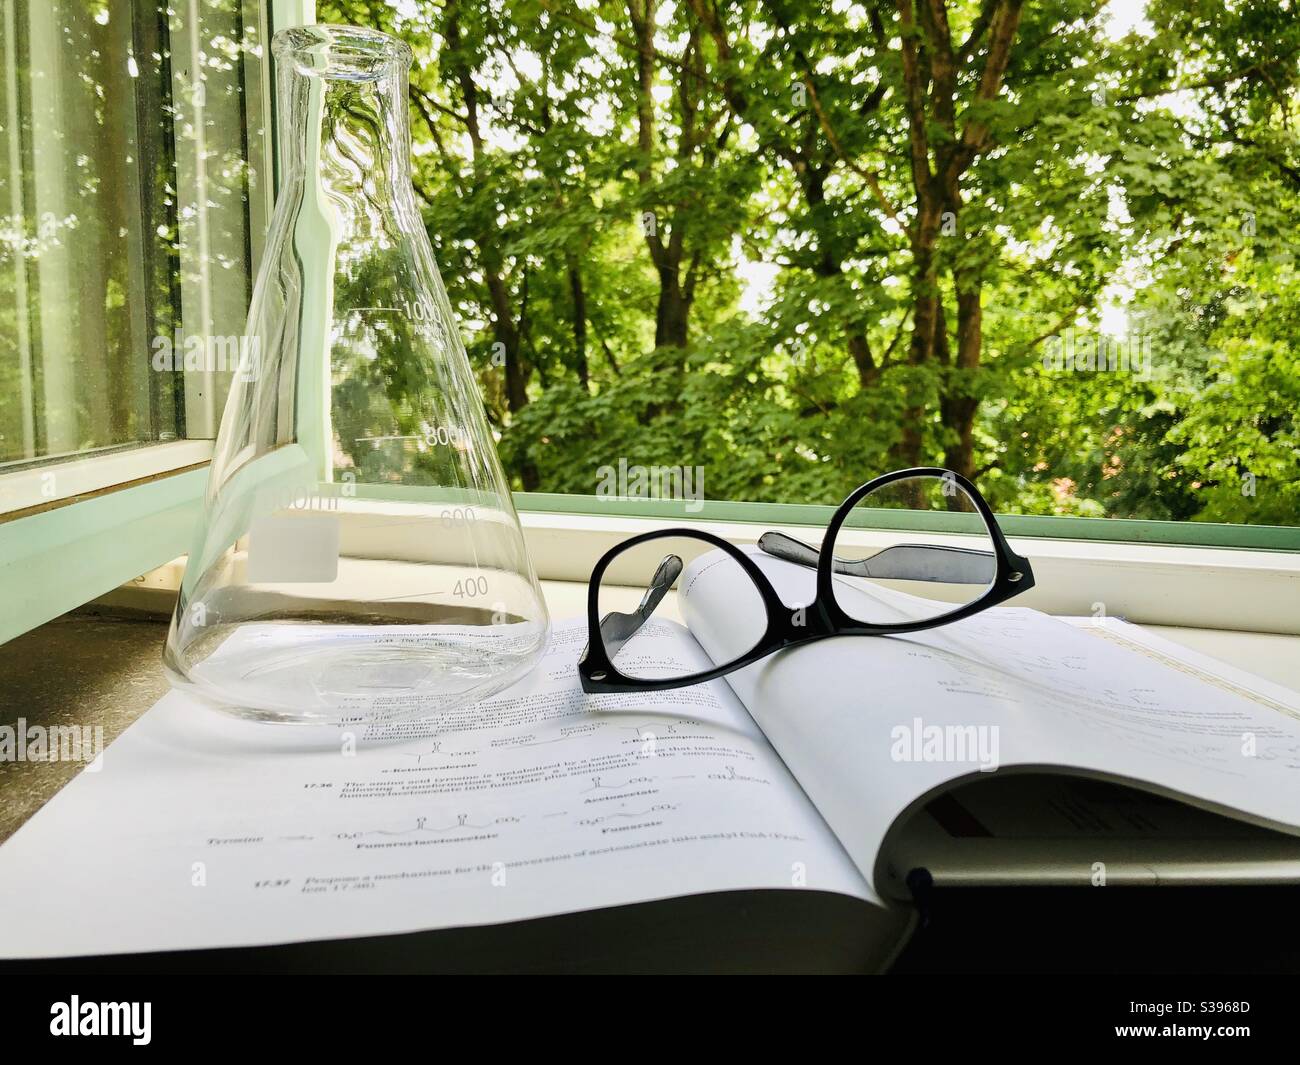 Lunettes reposant sur un livre de chimie. Flacon conique sur un livre de chimie. Fenêtre et arbres verts en arrière-plan. Banque D'Images